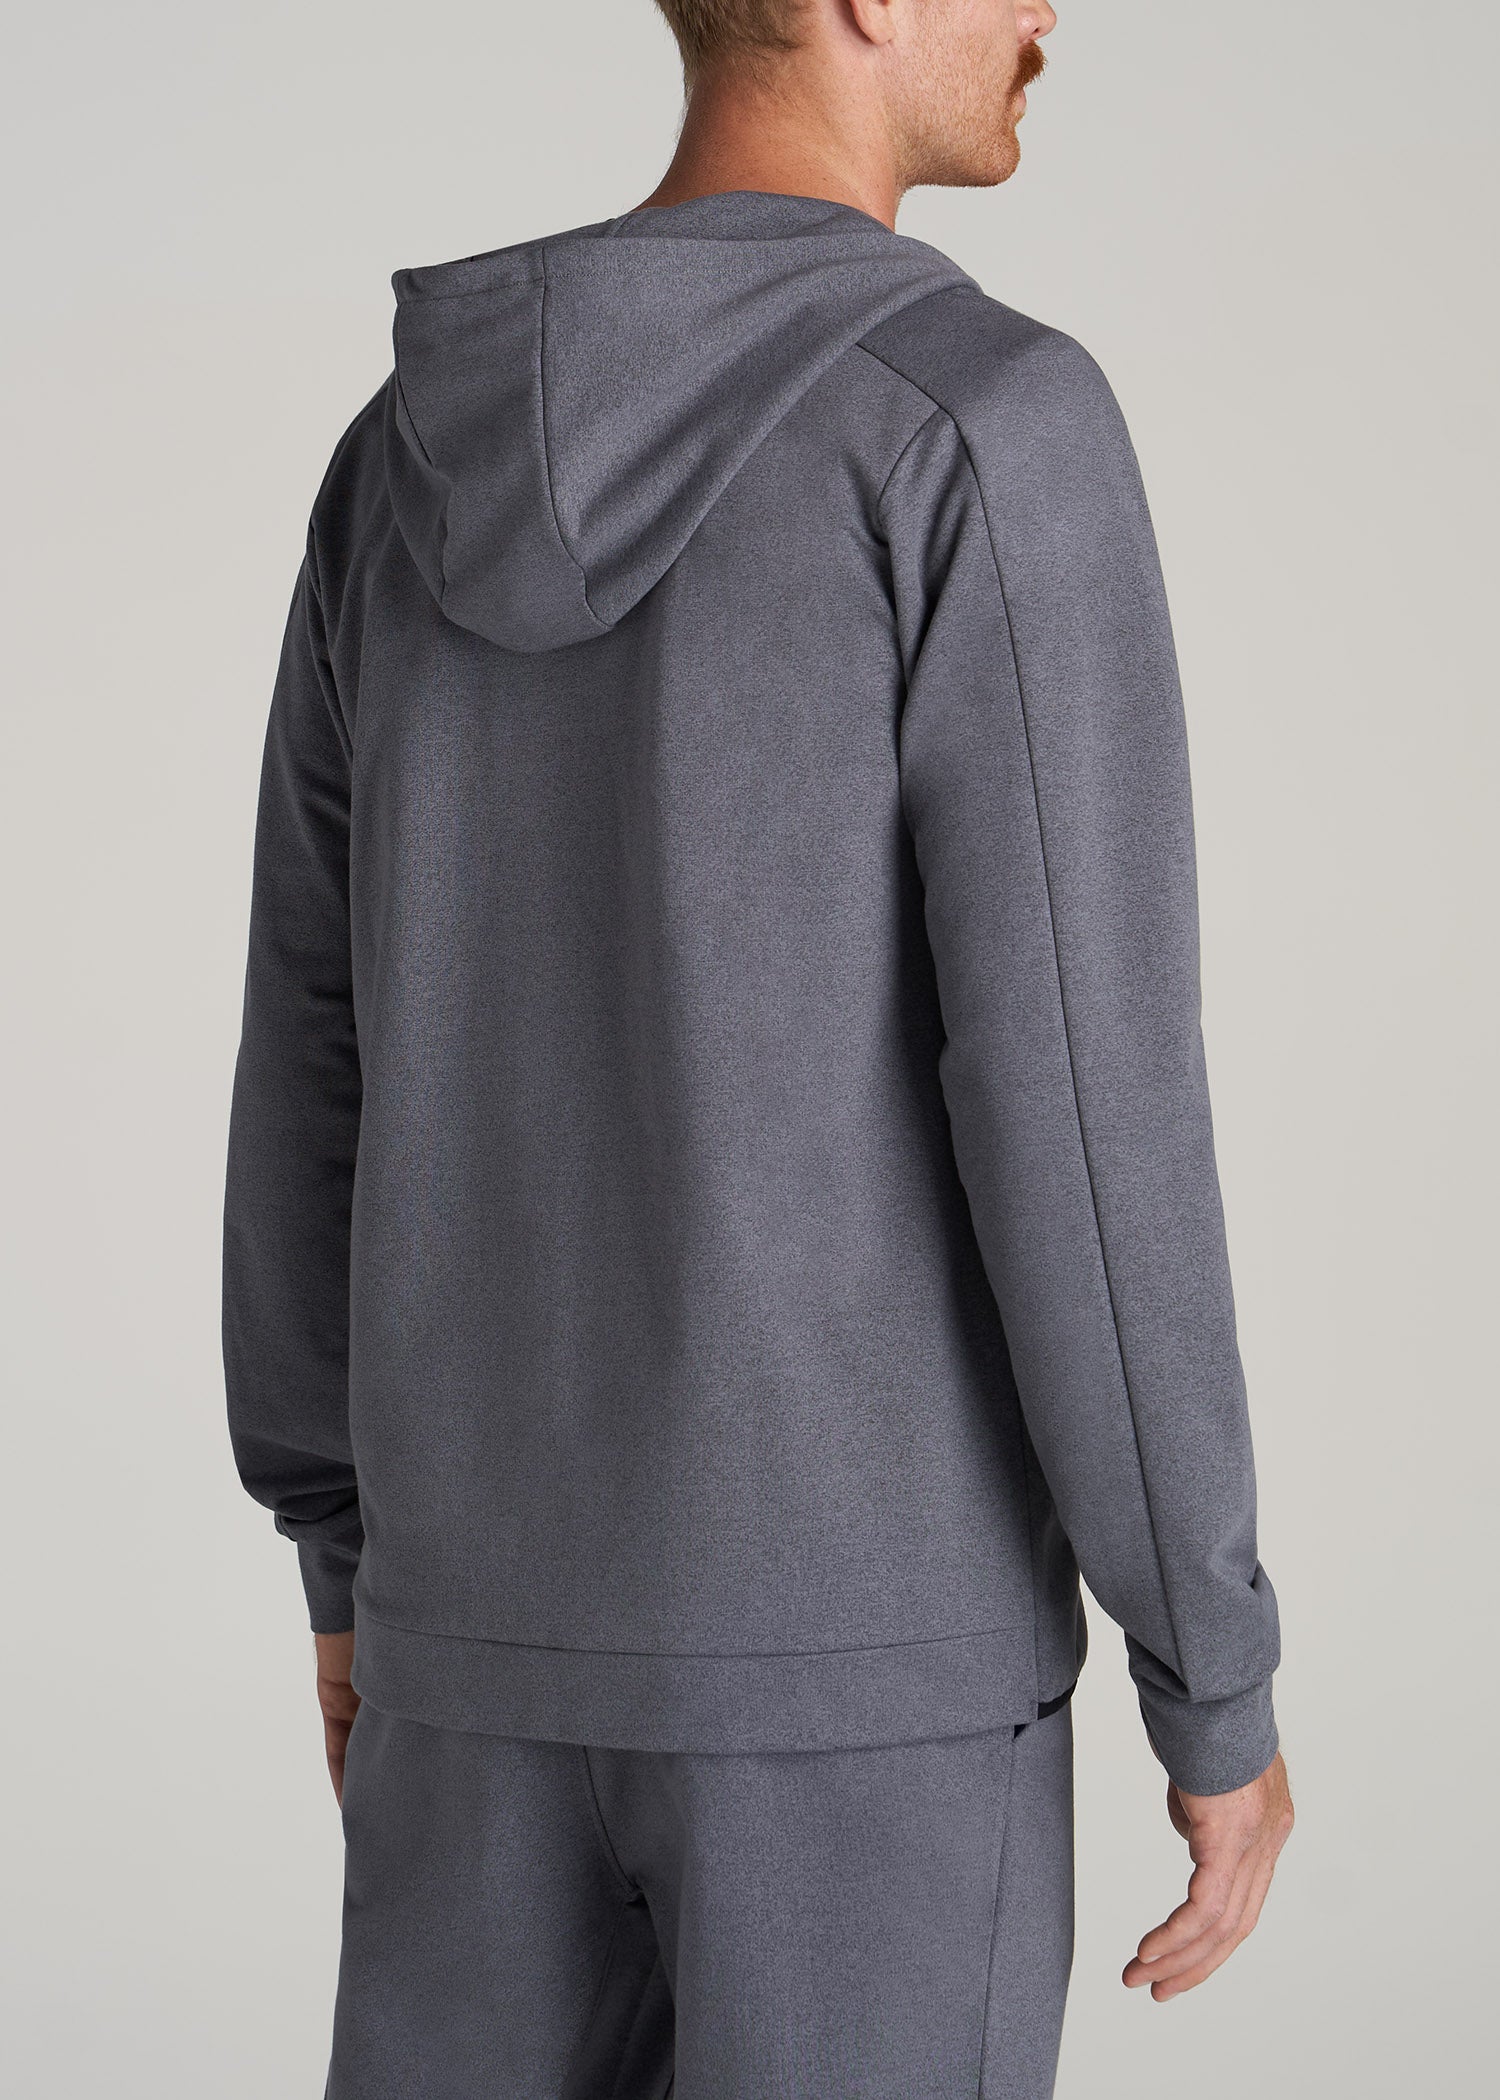 Nike Tall Tech Fleece full-zip hoodie in gray